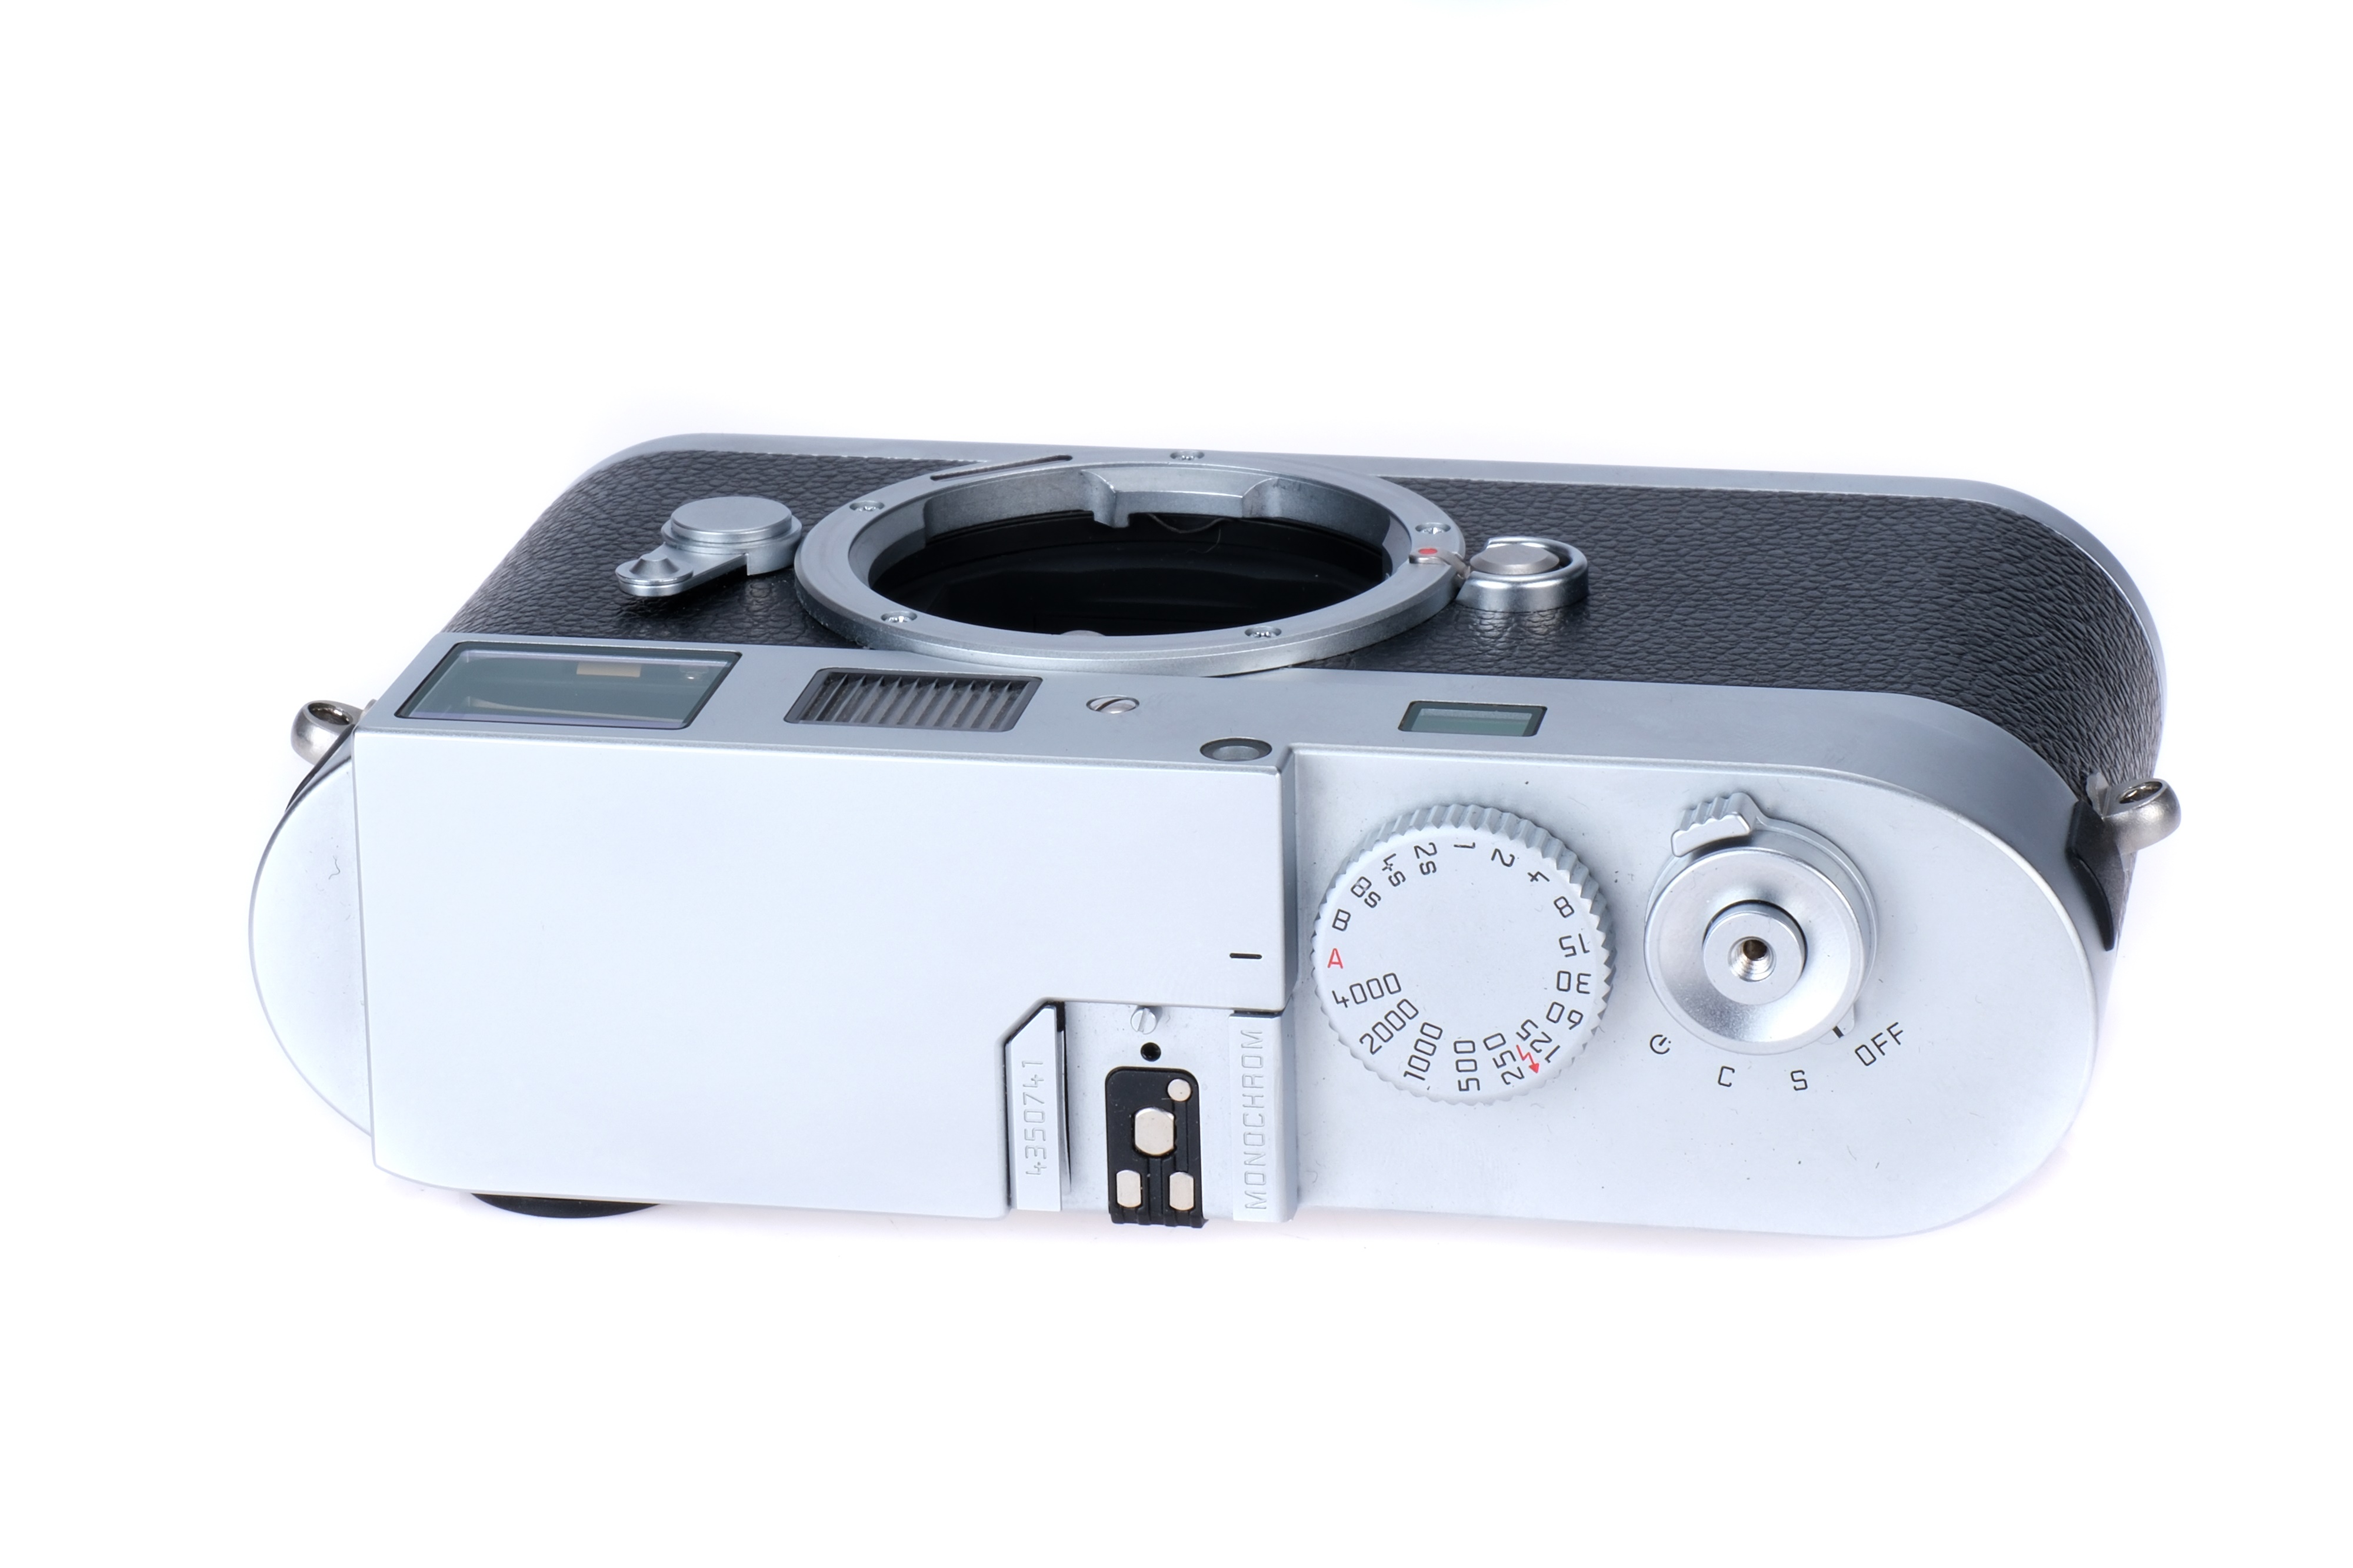 A Leica M Monochrom Digital Rangefinder Body, - Image 2 of 5